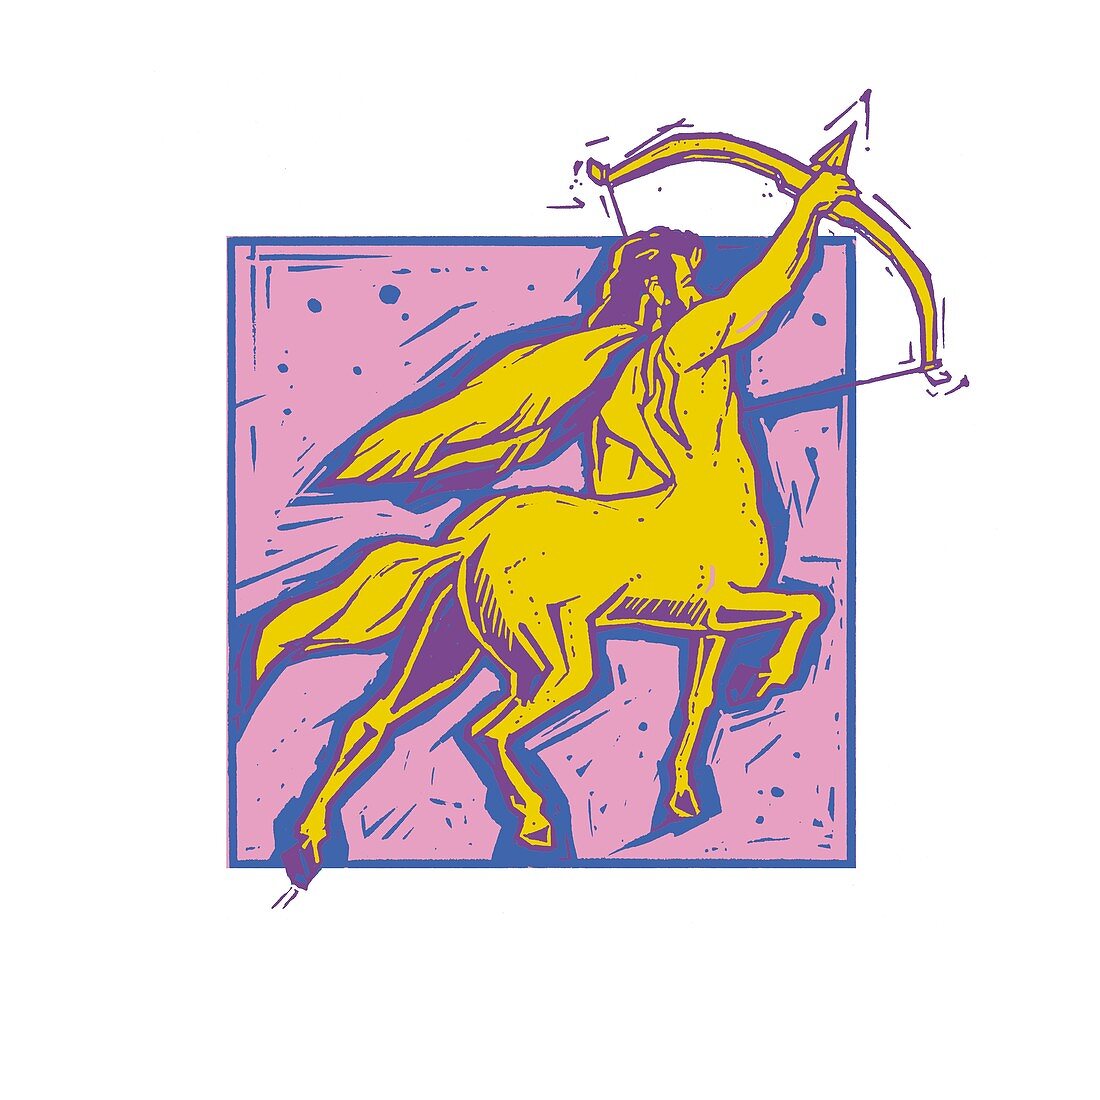 Sagittarius zodiac sign, illustration